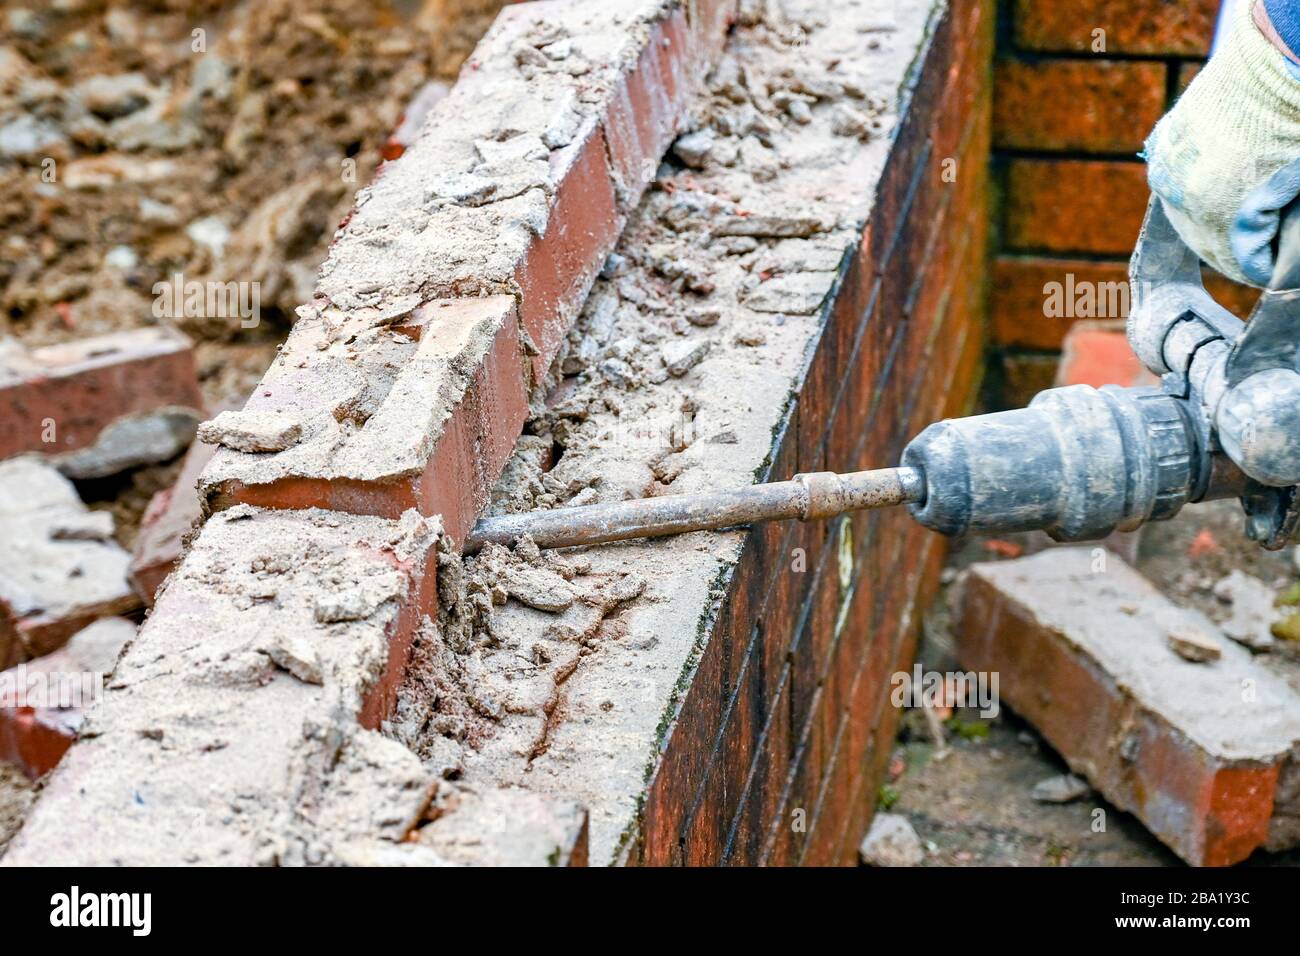 CARDIFF, WALES - JANUAR 2020: Arbeiter, die mit einem Stromhammer Ziegelsteine in einer alten Mauer aufbrechen. Stockfoto